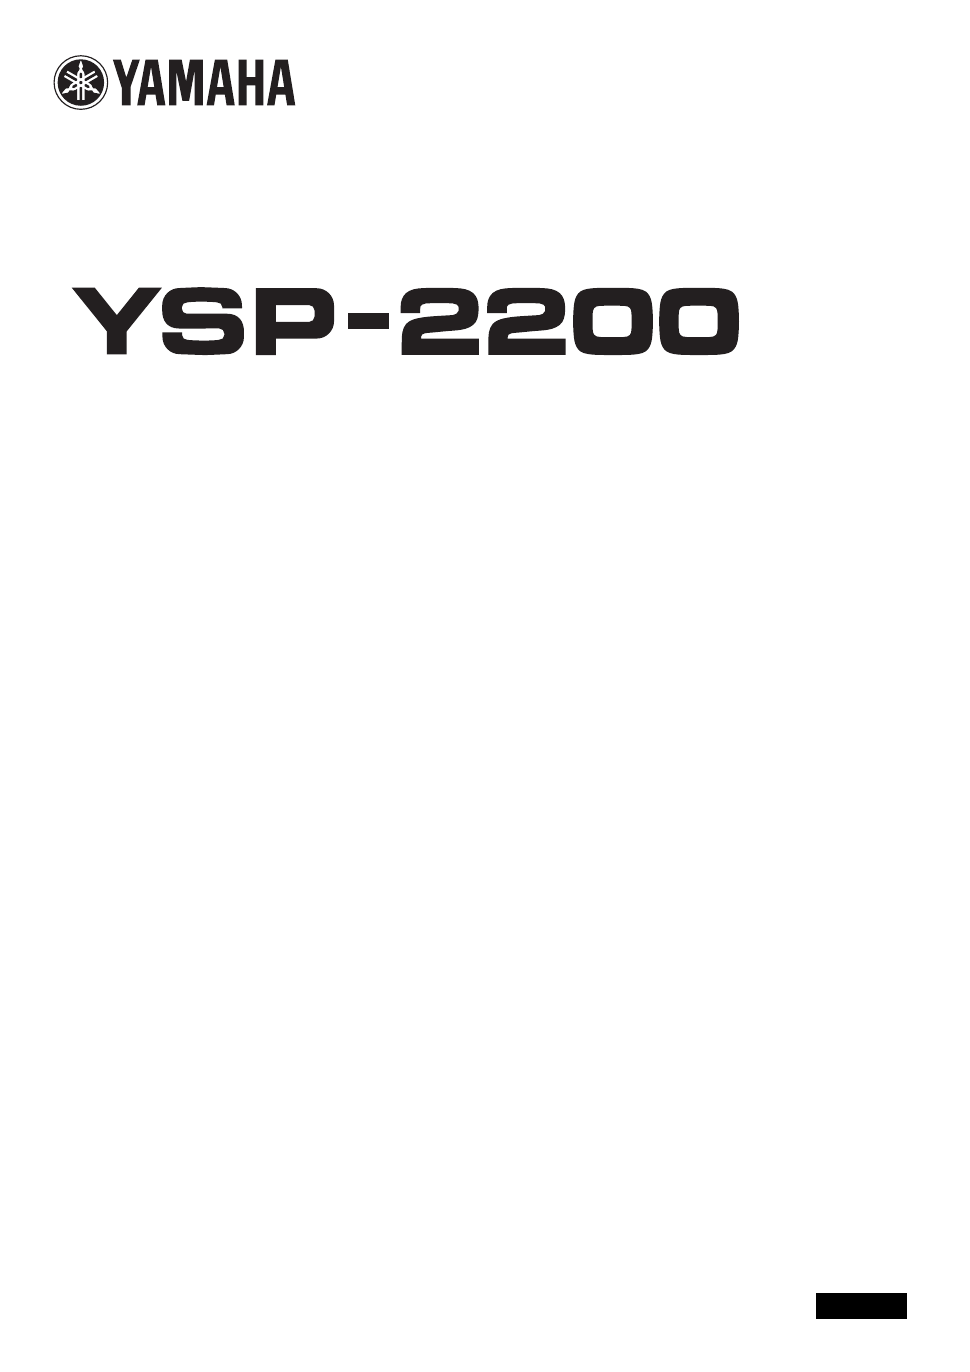 Ysp 2200 Manual Download